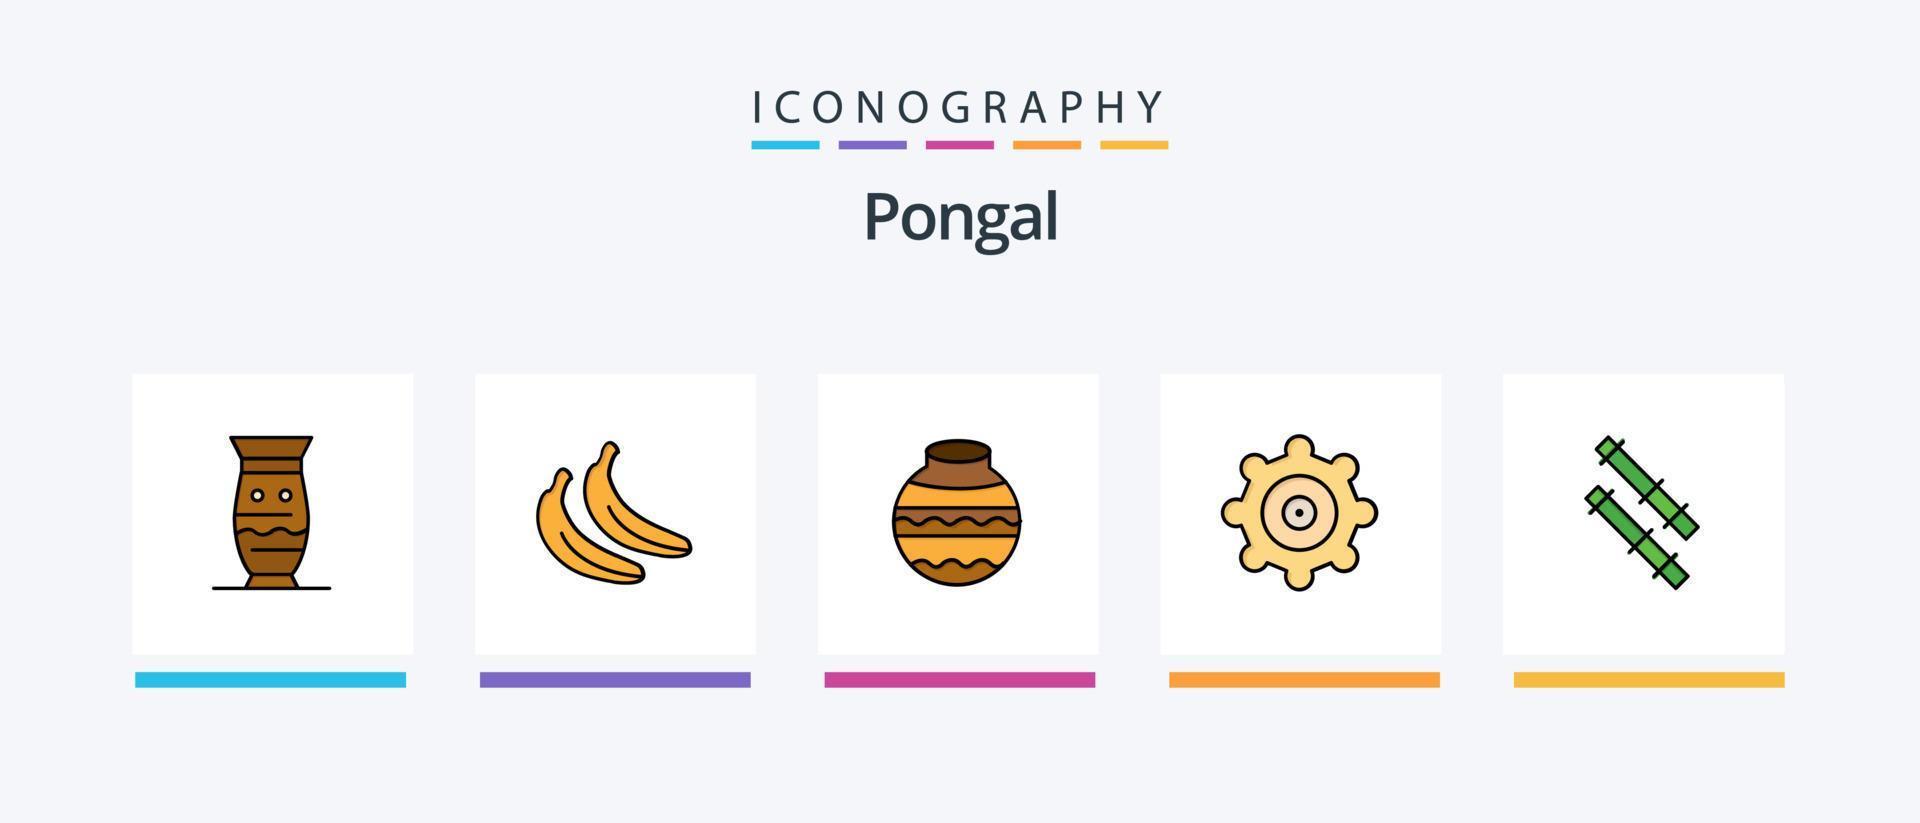 La línea pongal llenó el paquete de 5 íconos, incluido el dulce. indio. hola postre. bol. diseño de iconos creativos vector